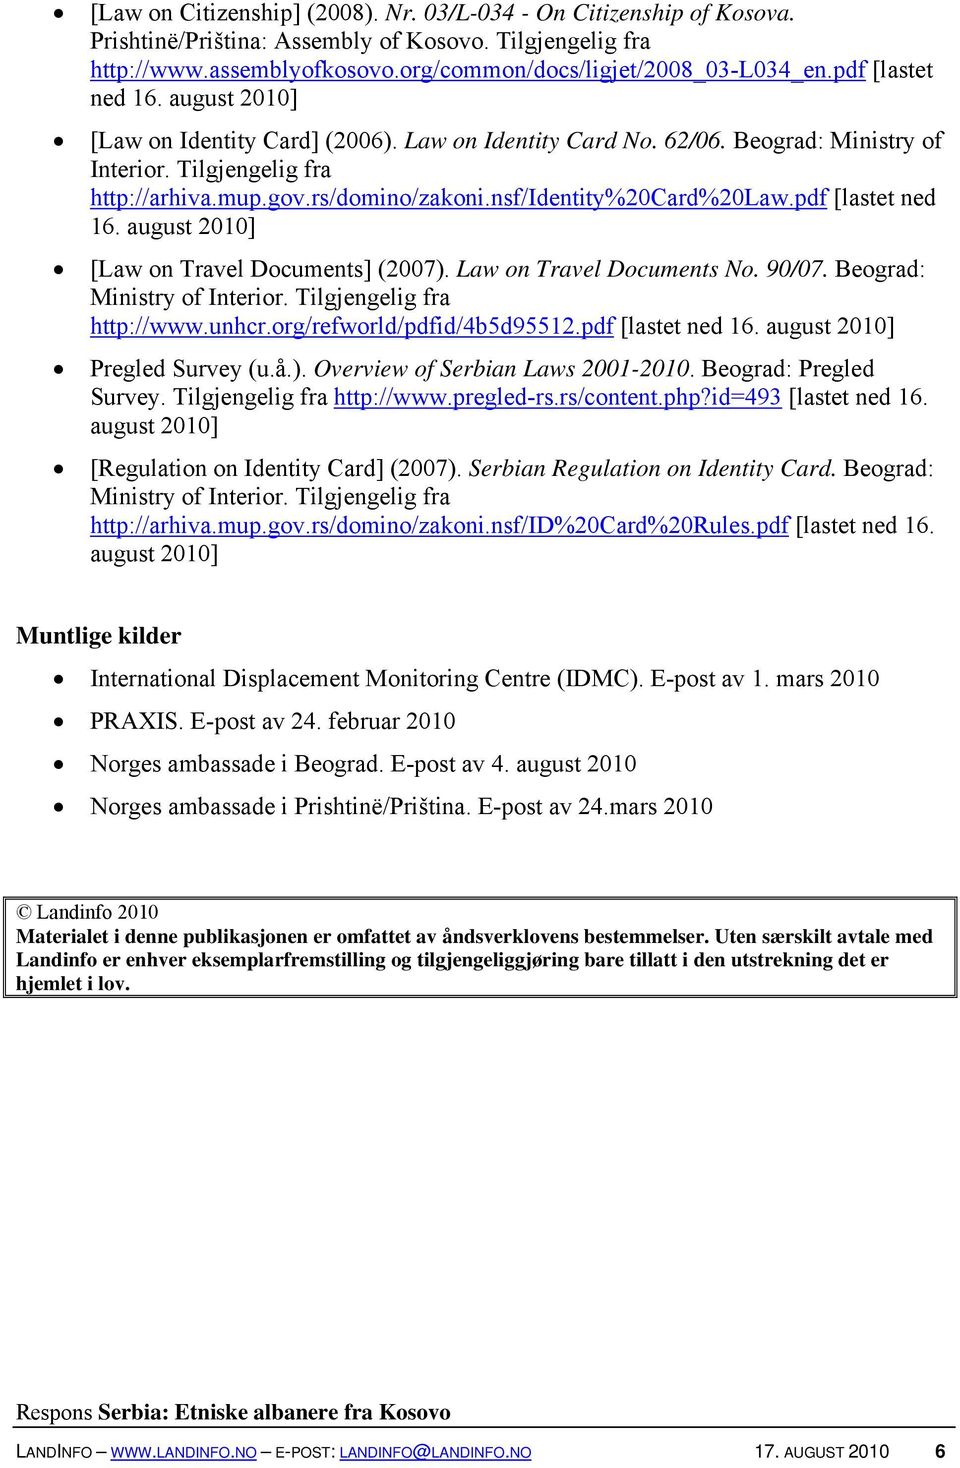 nsf/identity%20card%20law.pdf [lastet ned 16. august 2010] [Law on Travel Documents] (2007). Law on Travel Documents No. 90/07. Beograd: Ministry of Interior. Tilgjengelig fra http://www.unhcr.